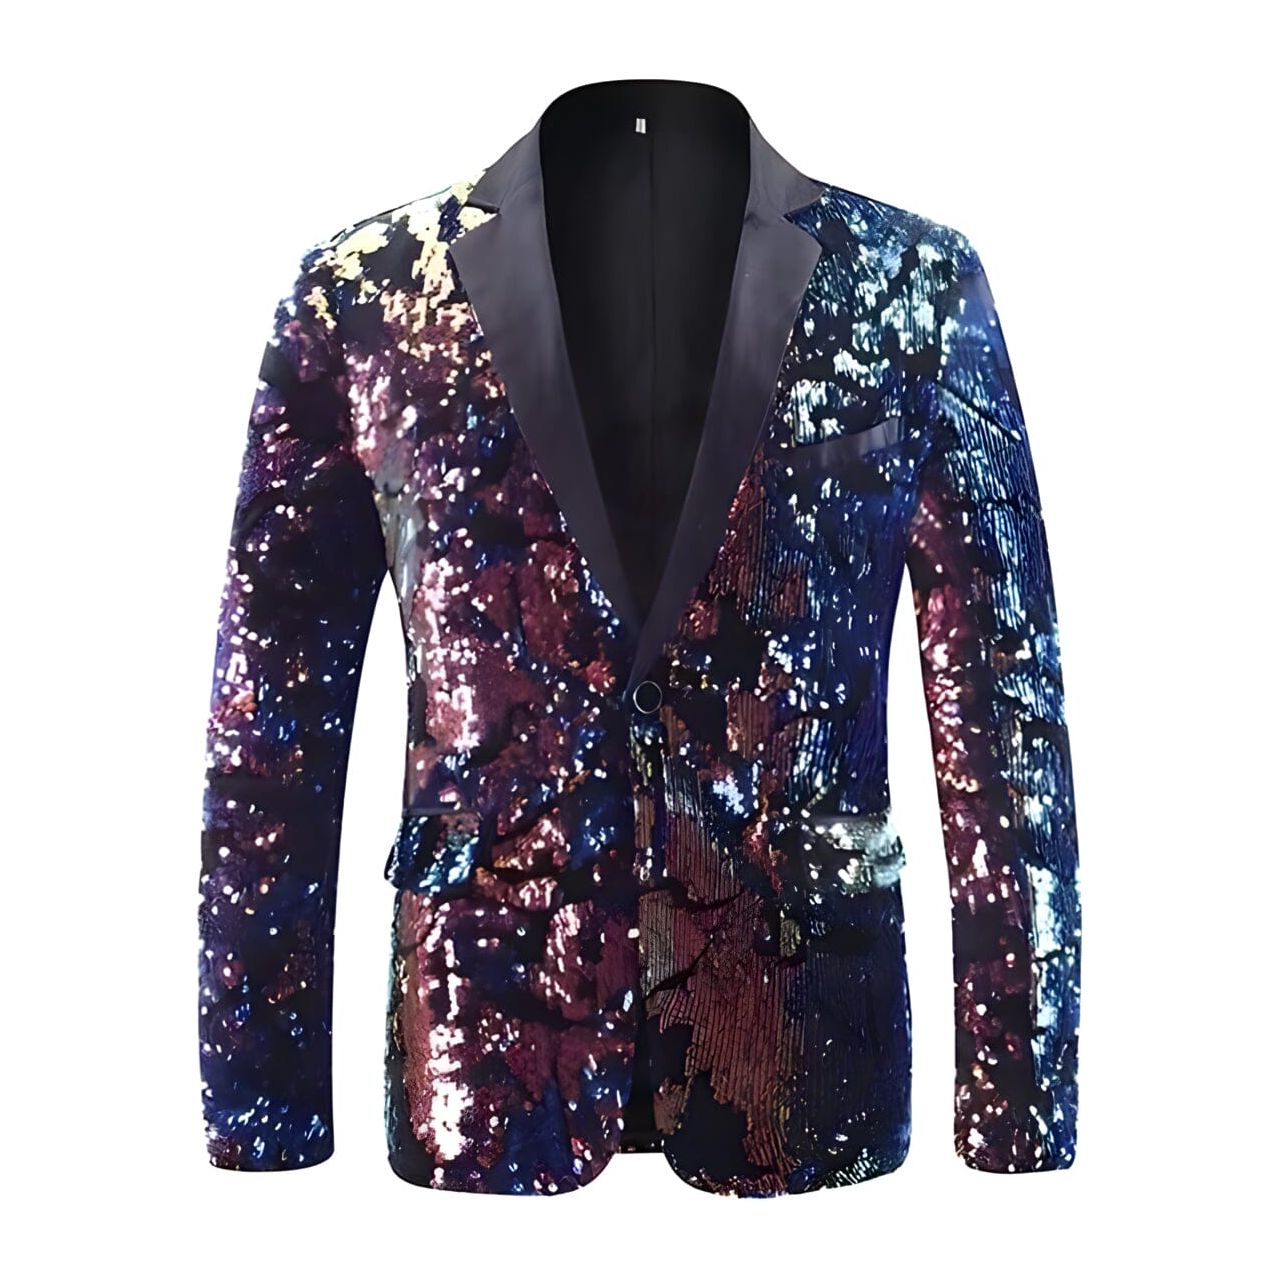 The Thierry Sequin Slim Fit Blazer Suit Jacket Shop5798684 Store L 